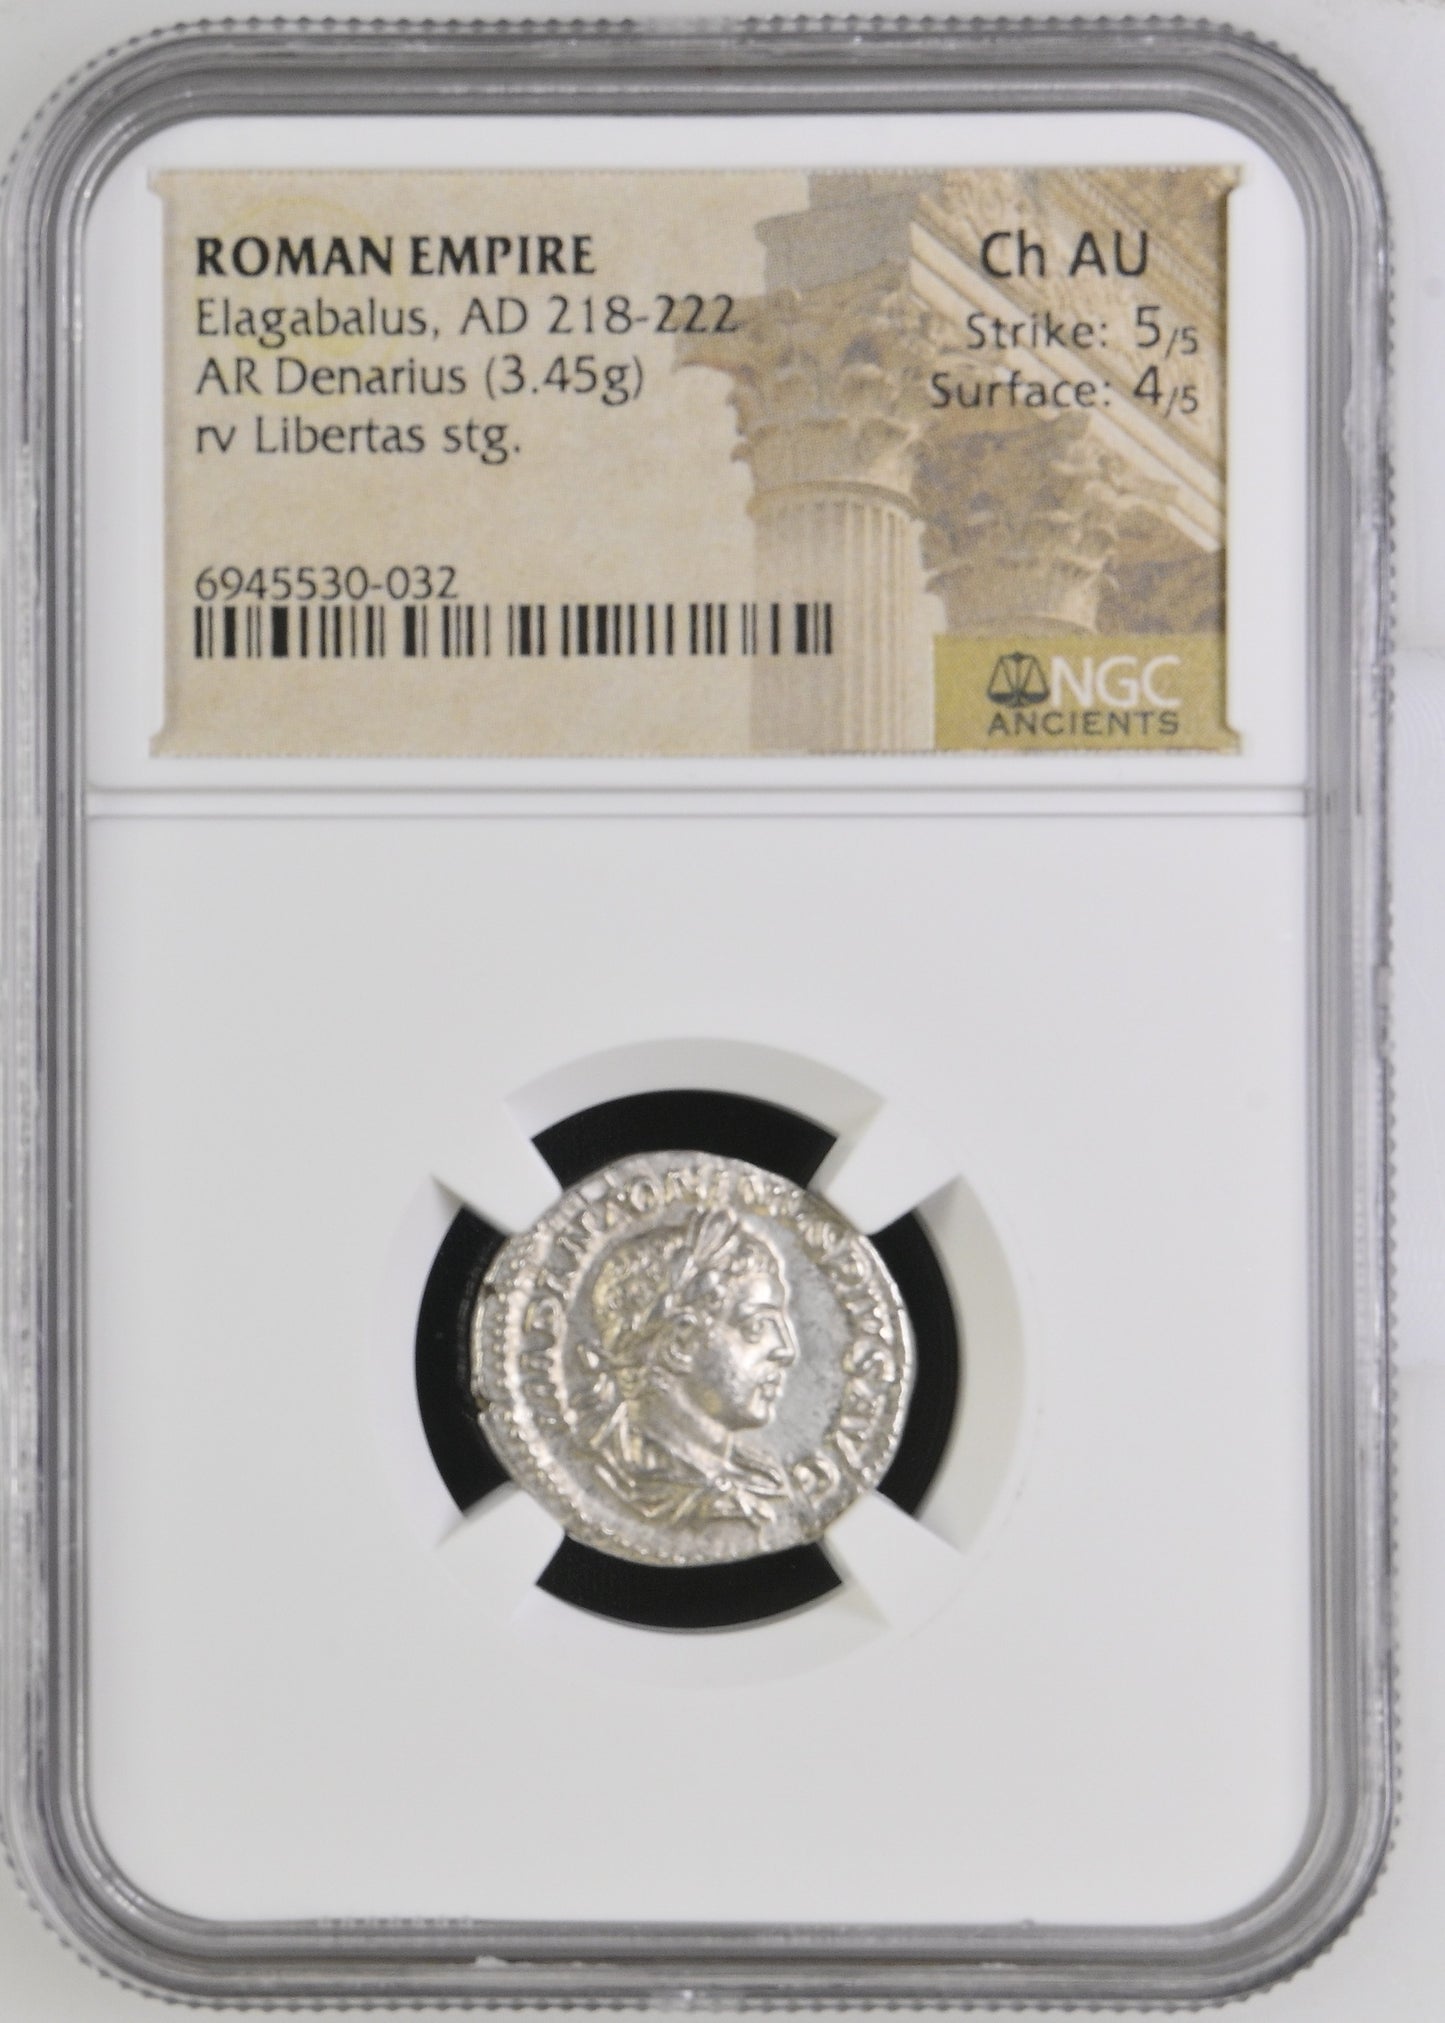 Roman Empire - Elagabalus - Silver Denarius - NGC Ch AU - RIC:107